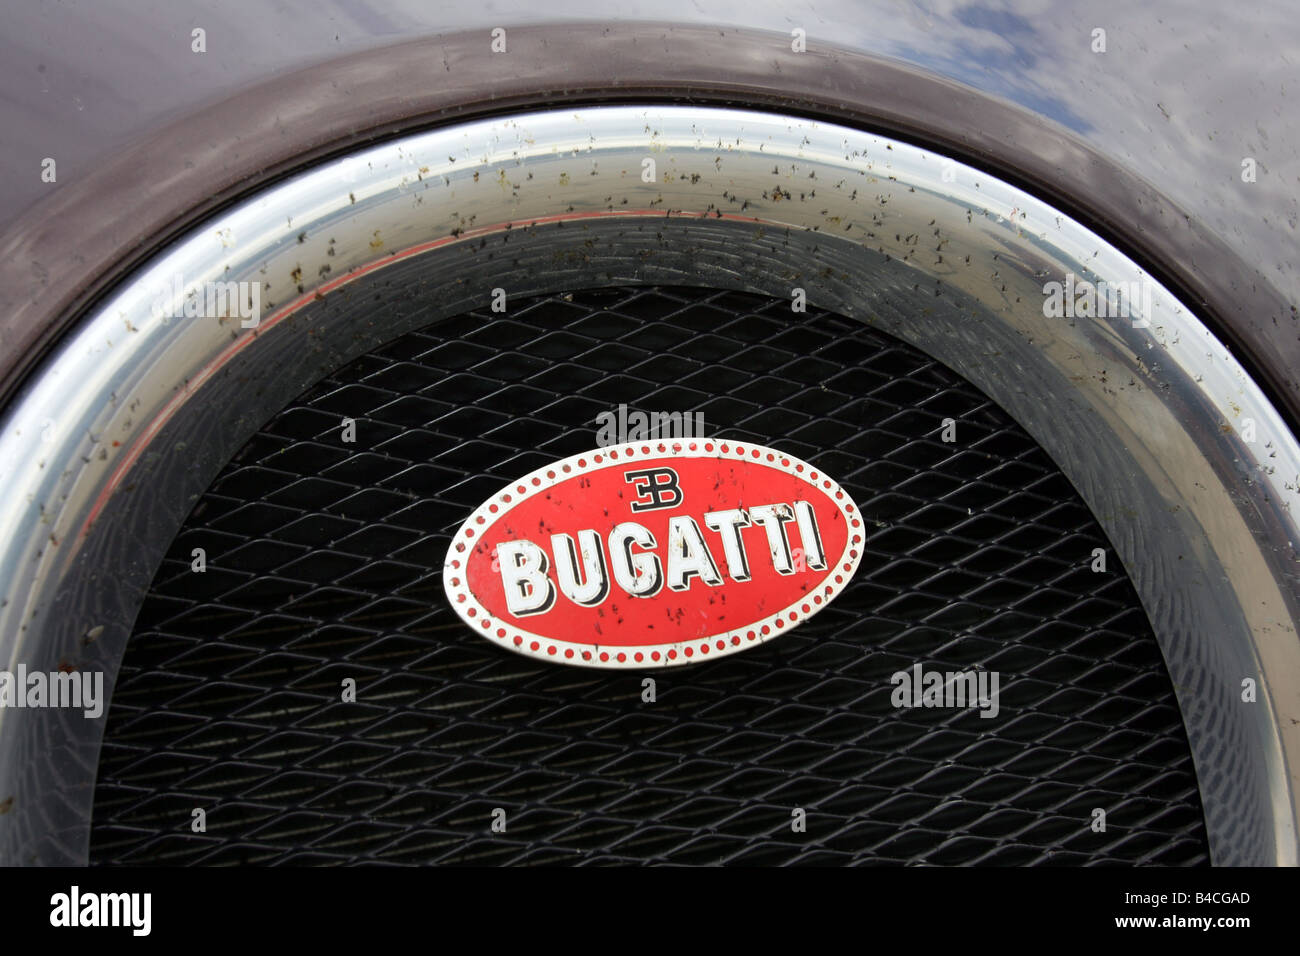 Voiture, la Bugatti Veyron 16.4, roadster, coupé, l'année de modèle 2005-,  vin-rouge-noir, vue de détail, le logo de la société, la technique/ accessoire, un Photo Stock - Alamy